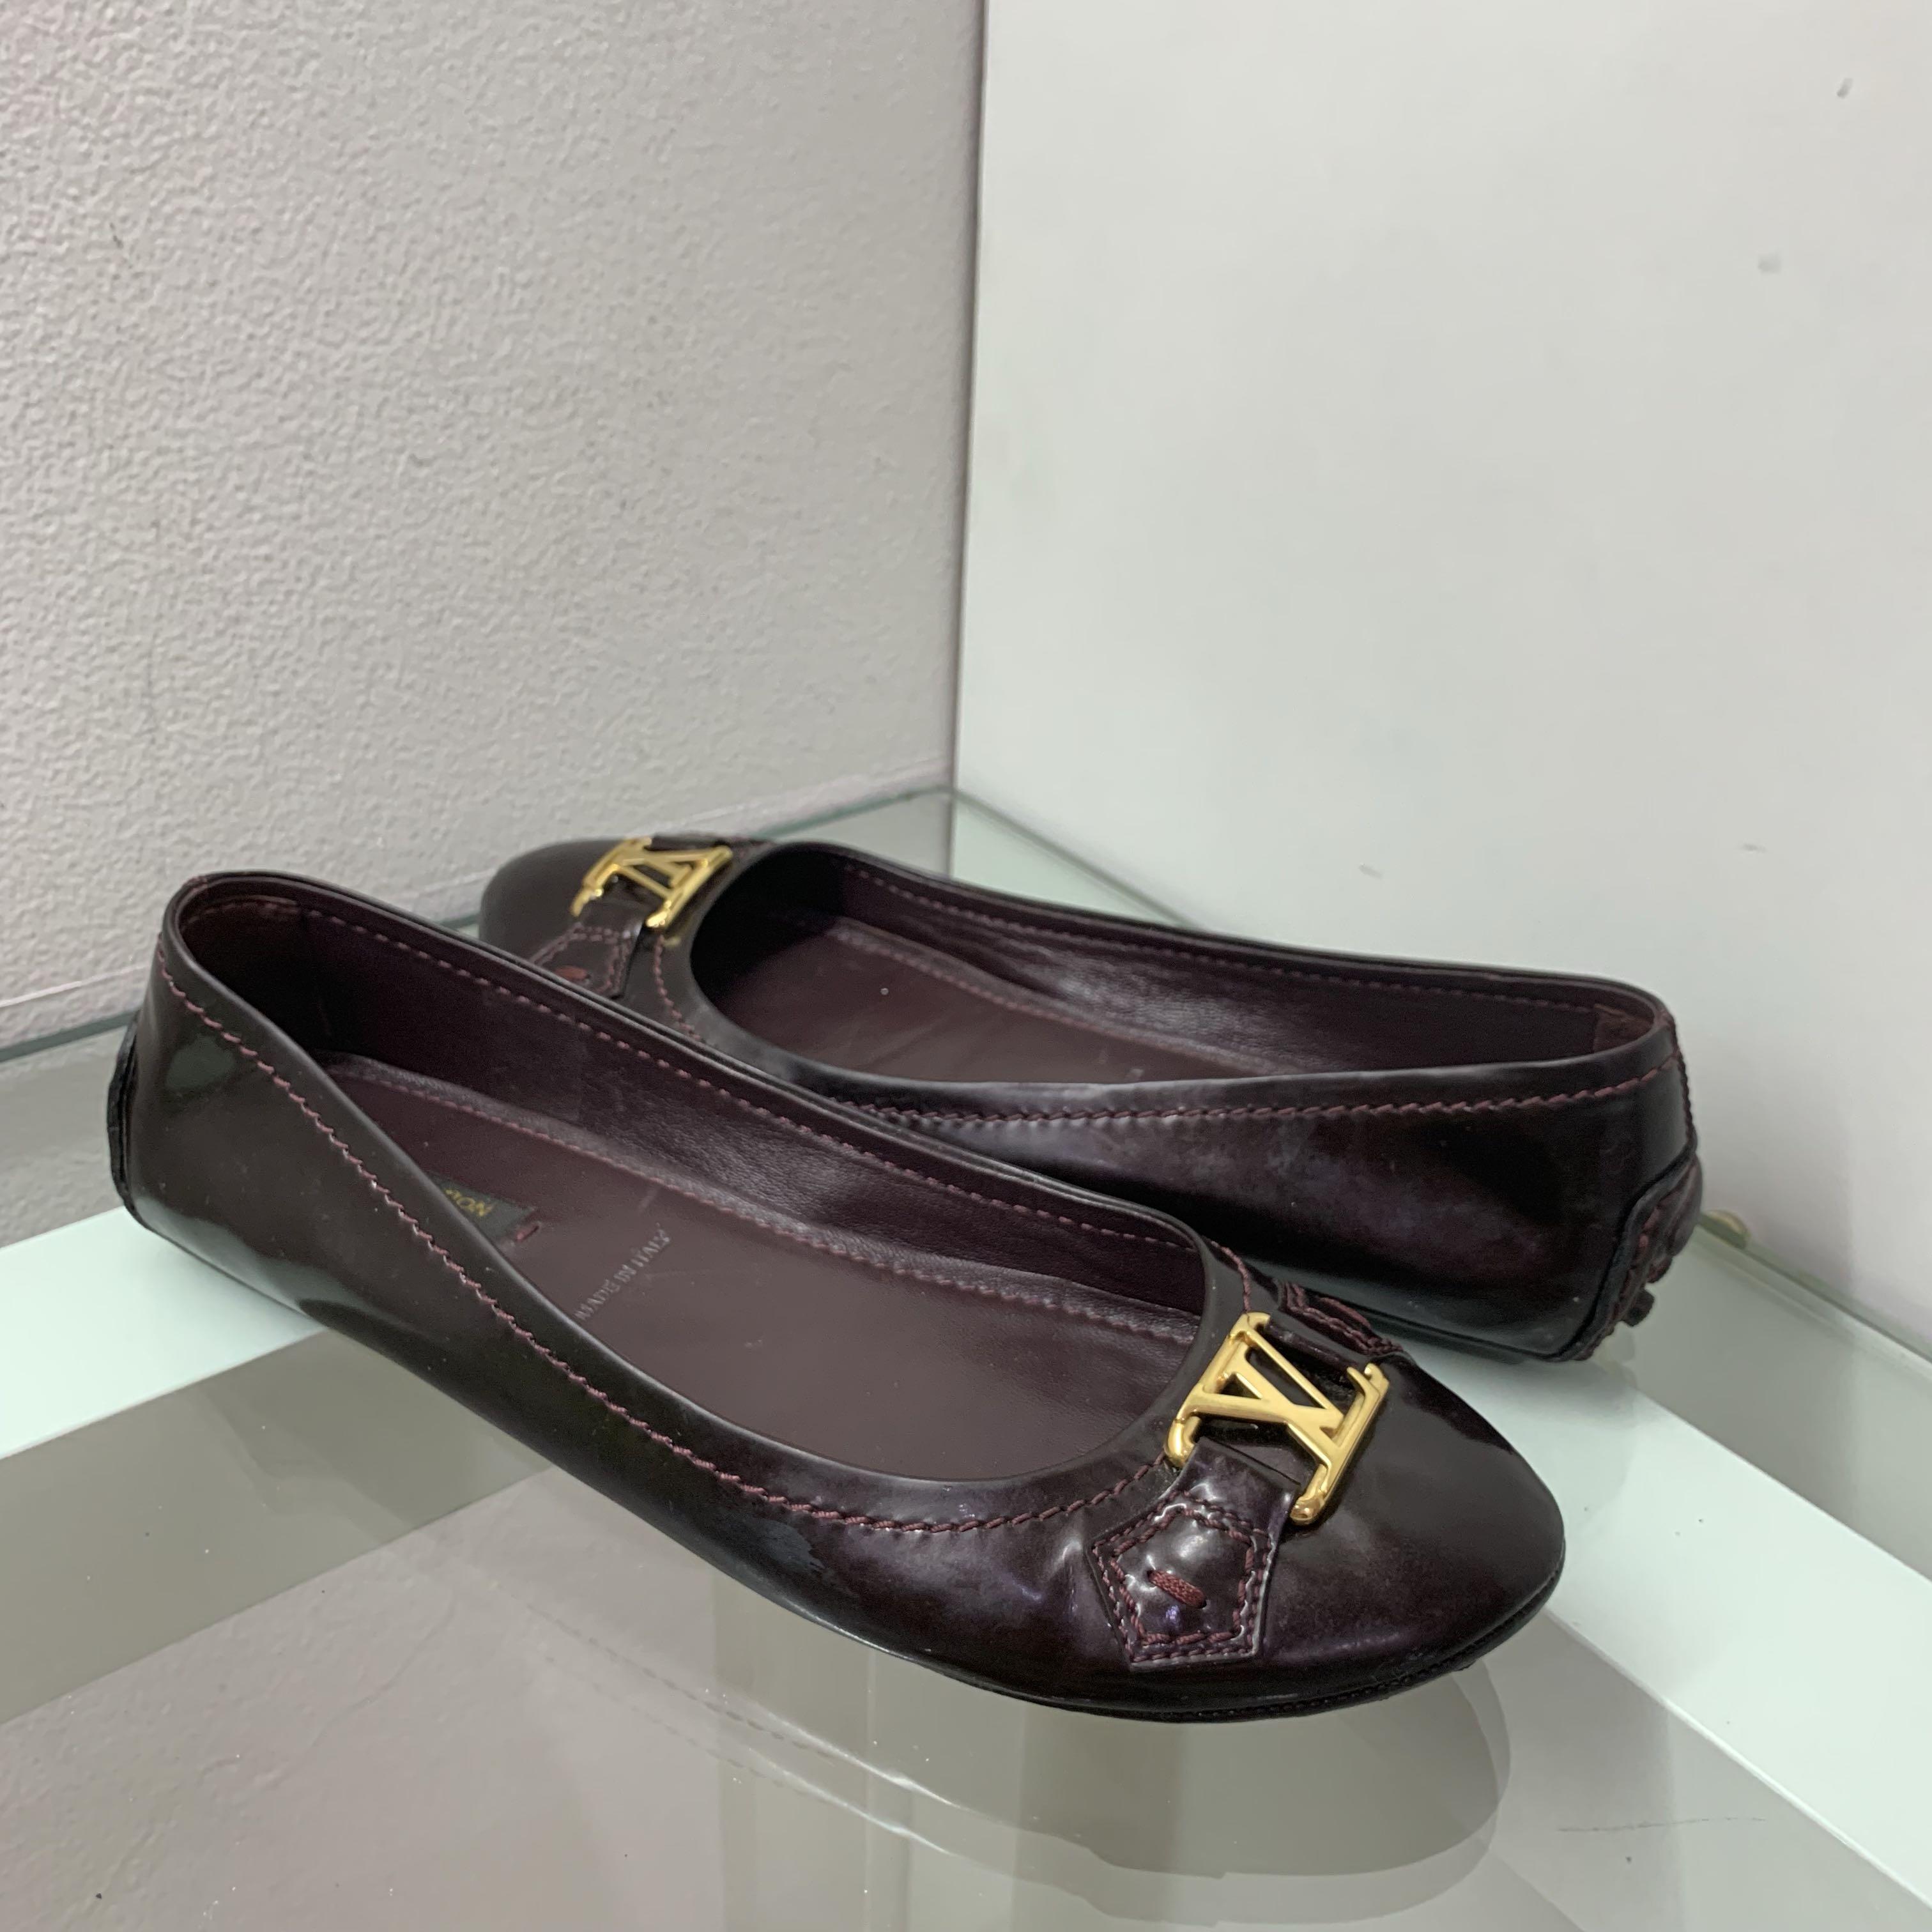 Harga Sepatu Louis Vuitton Wanita Original